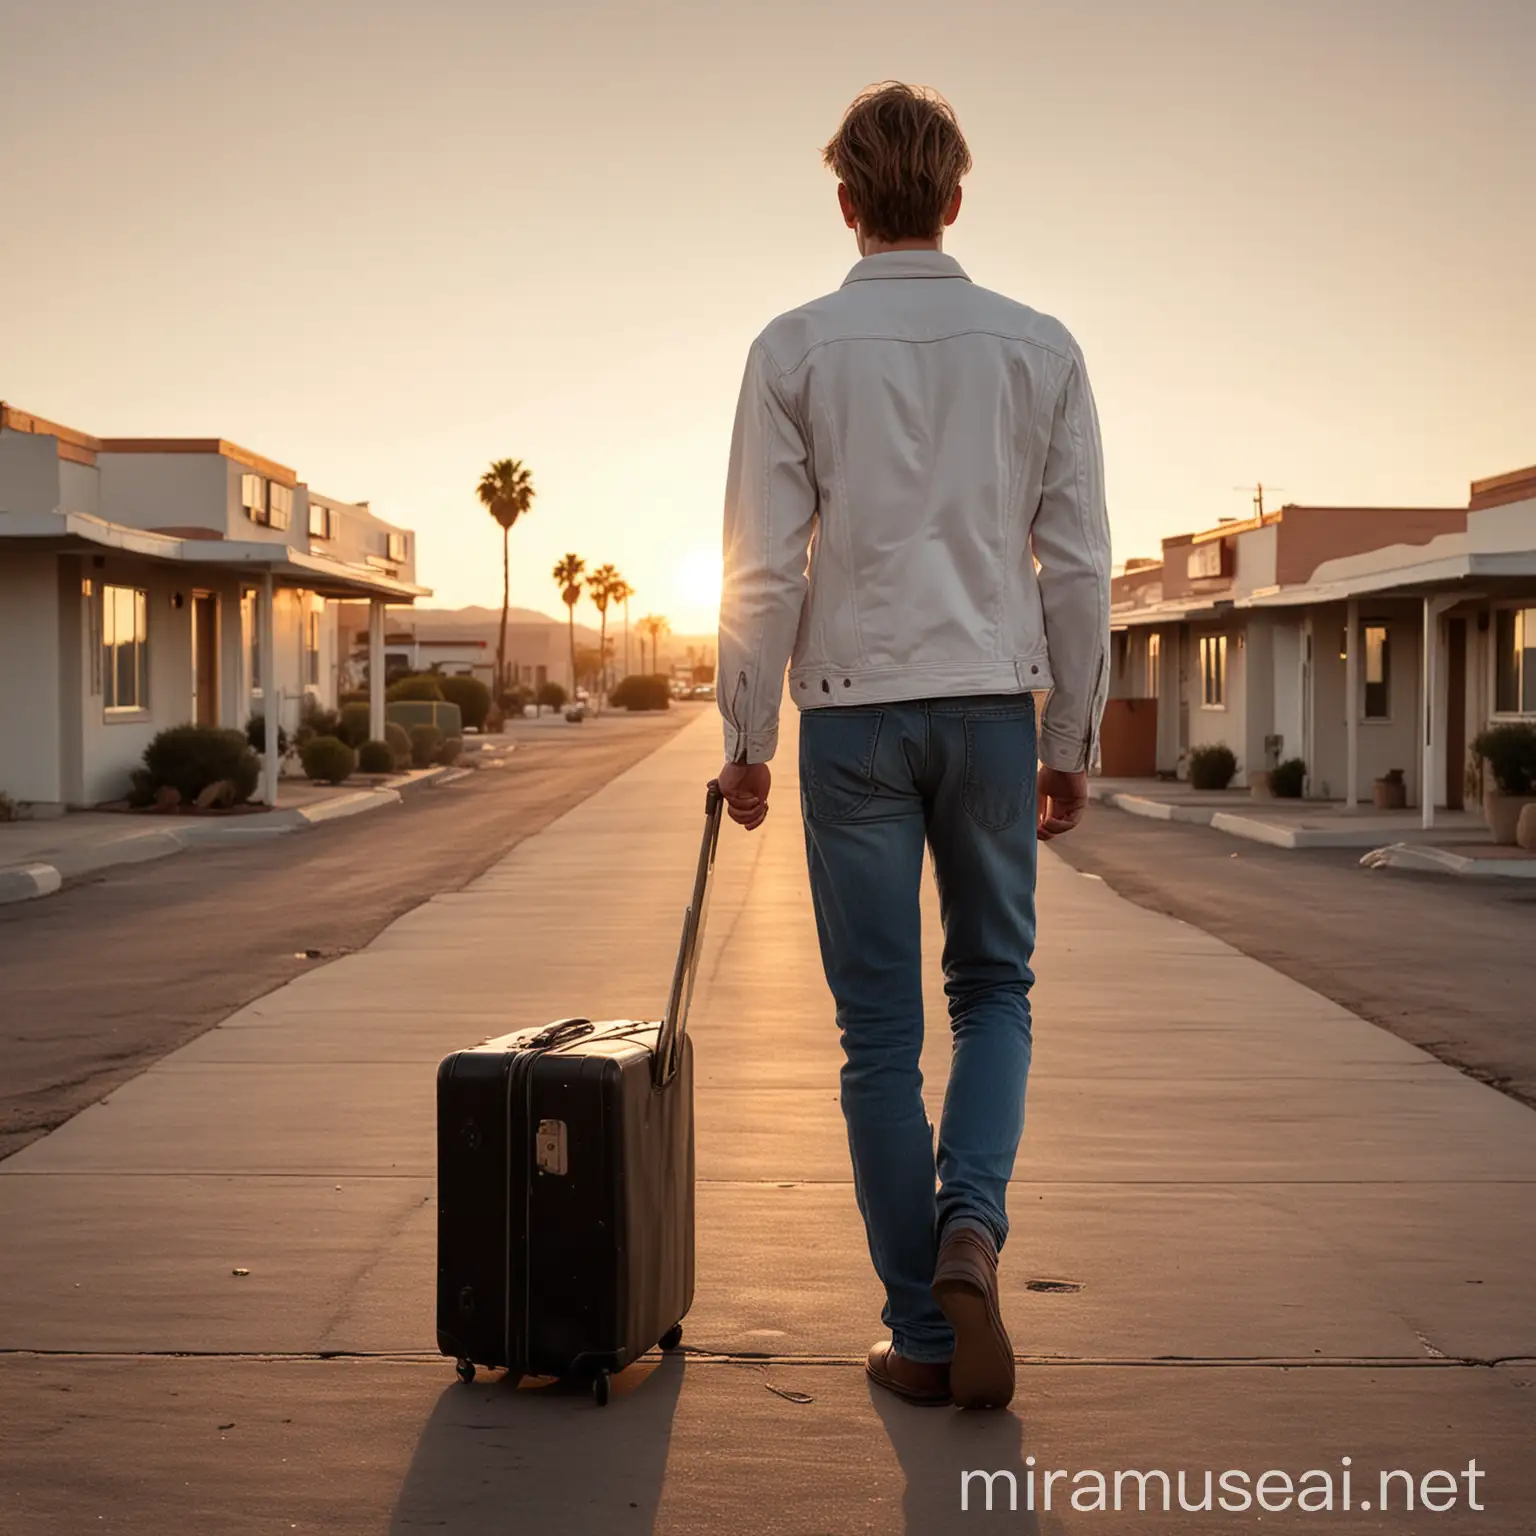 Solo Traveler at Californian Desert Motel During Sunset